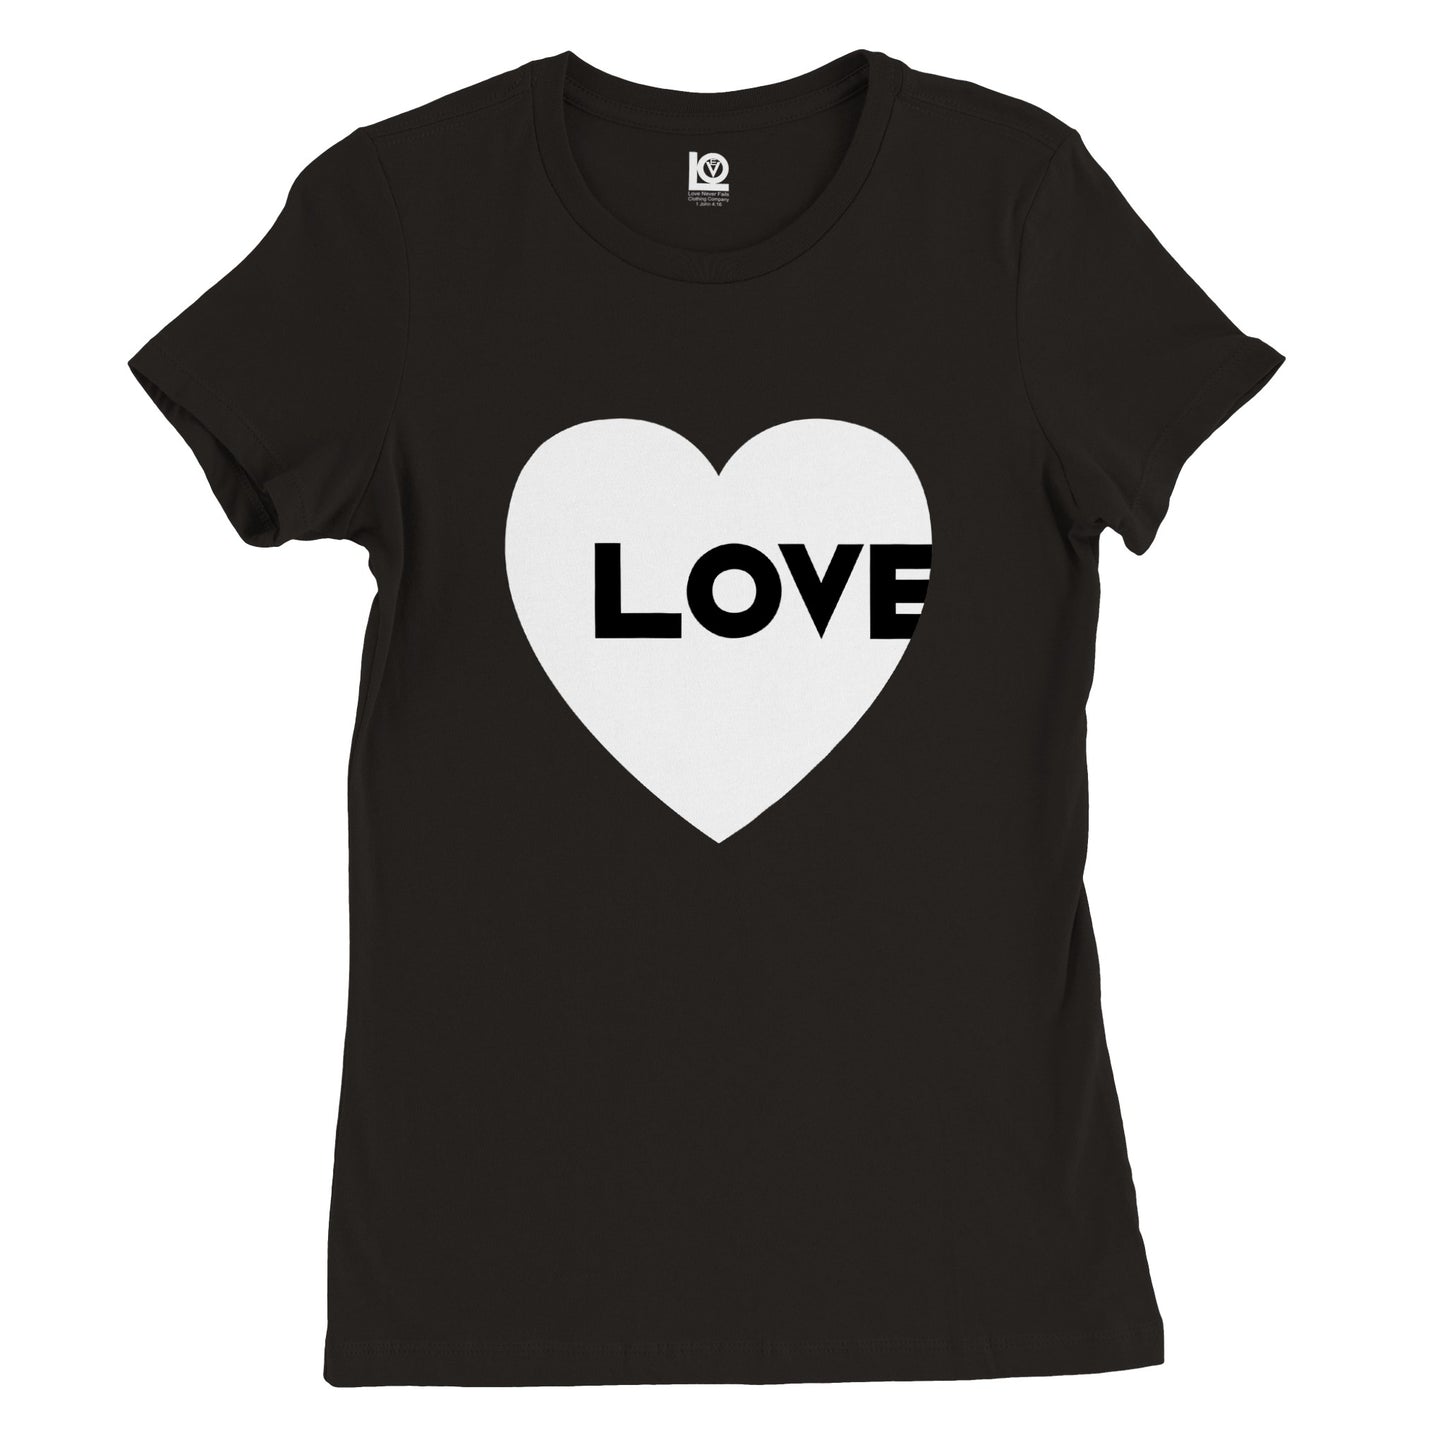 Offset Love T-shirt Women's